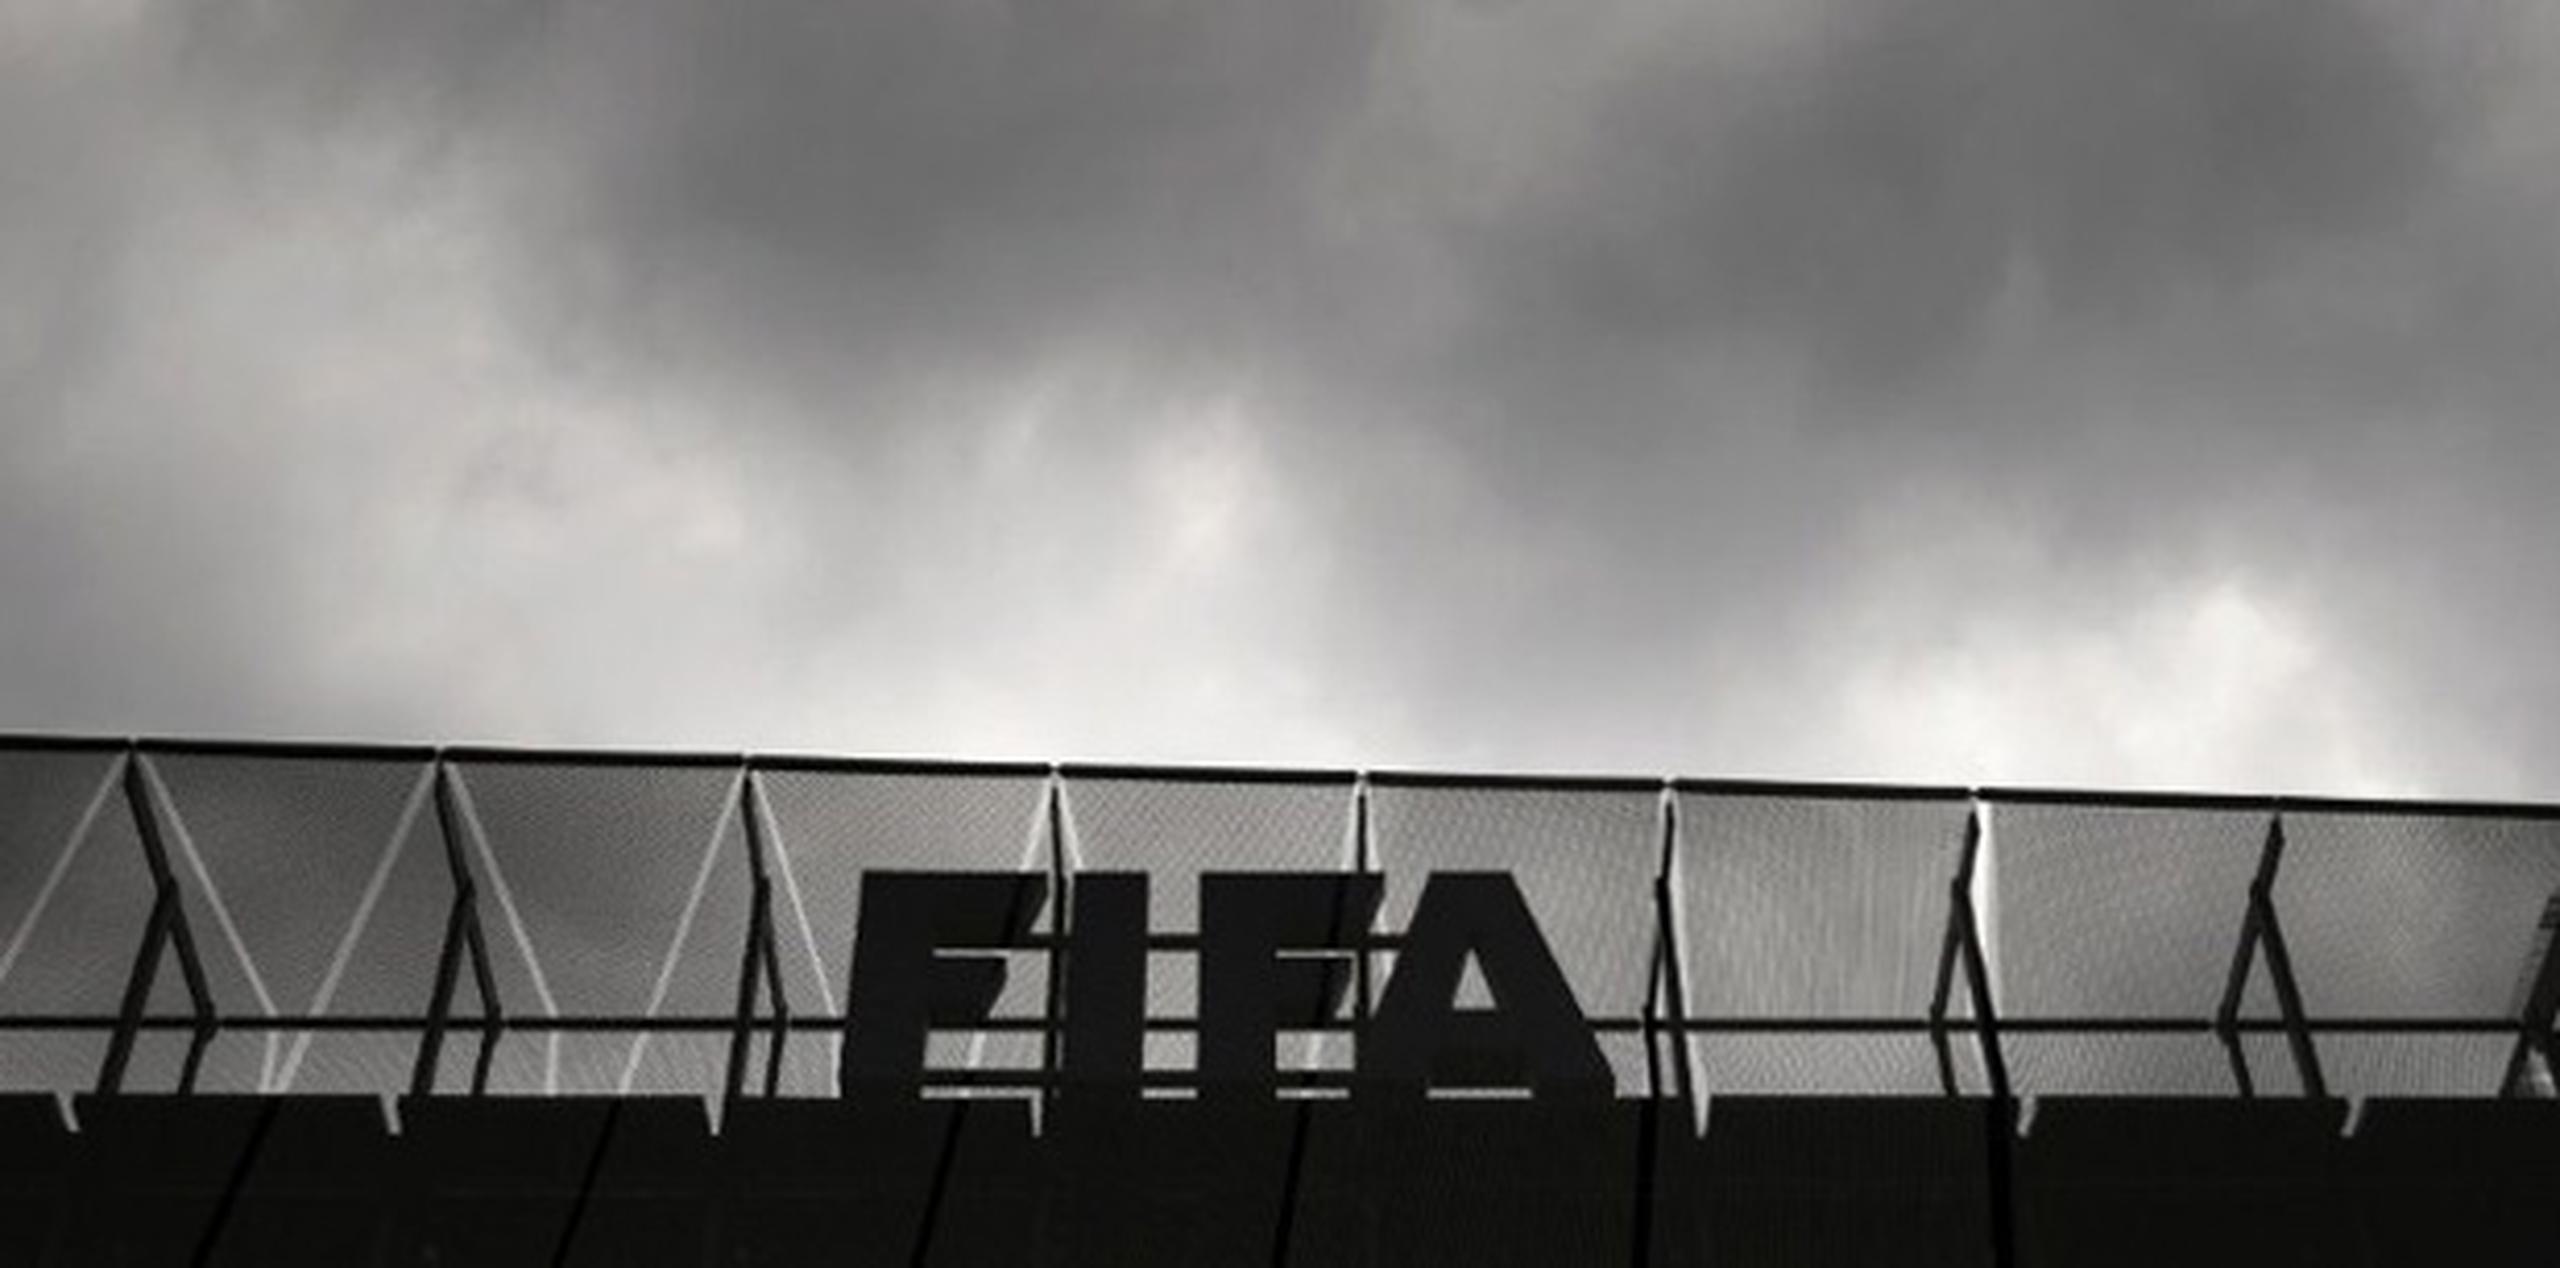 Siete ejecutivos, incluyendo a dos vicepresidentes de la FIFA, seguían detenidos el miércoles dentro de una investigación estadounidense sobre corrupción.